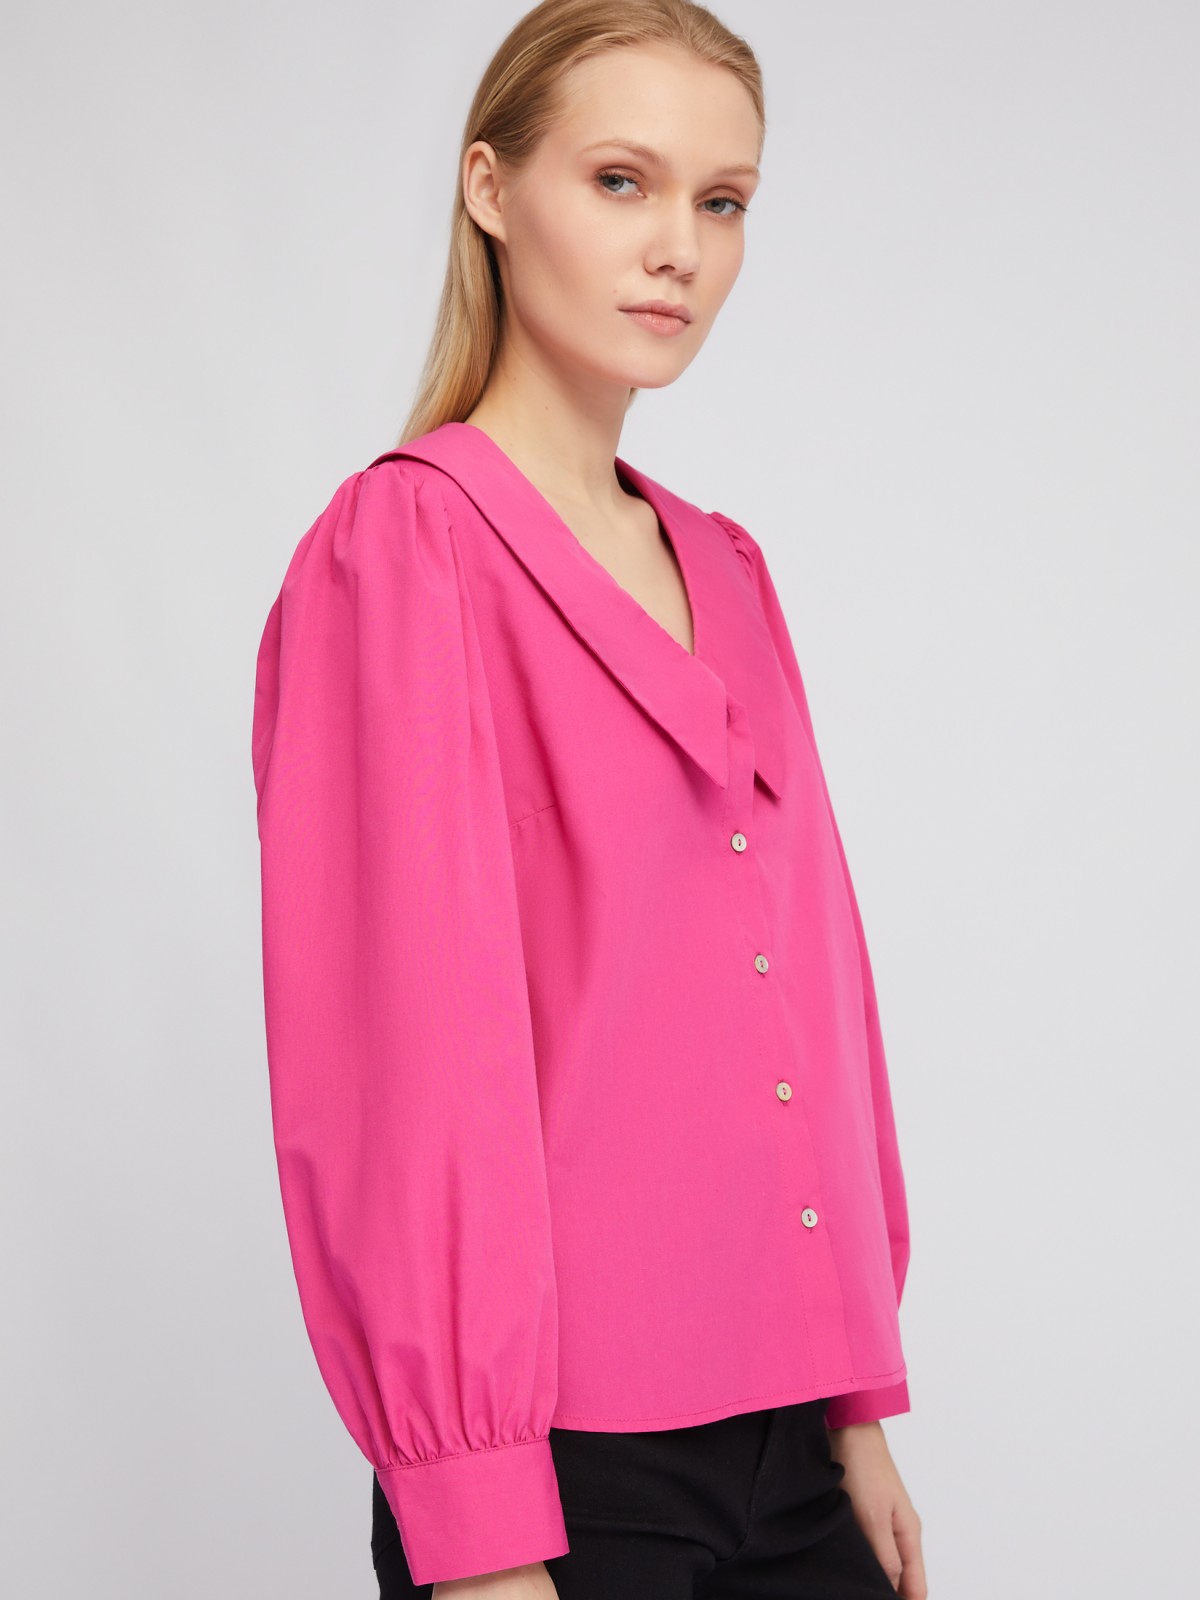 Блузка-рубашка с акцентным воротником и объёмными рукавами zolla 02411117Y593, цвет фуксия, размер XS - фото 5